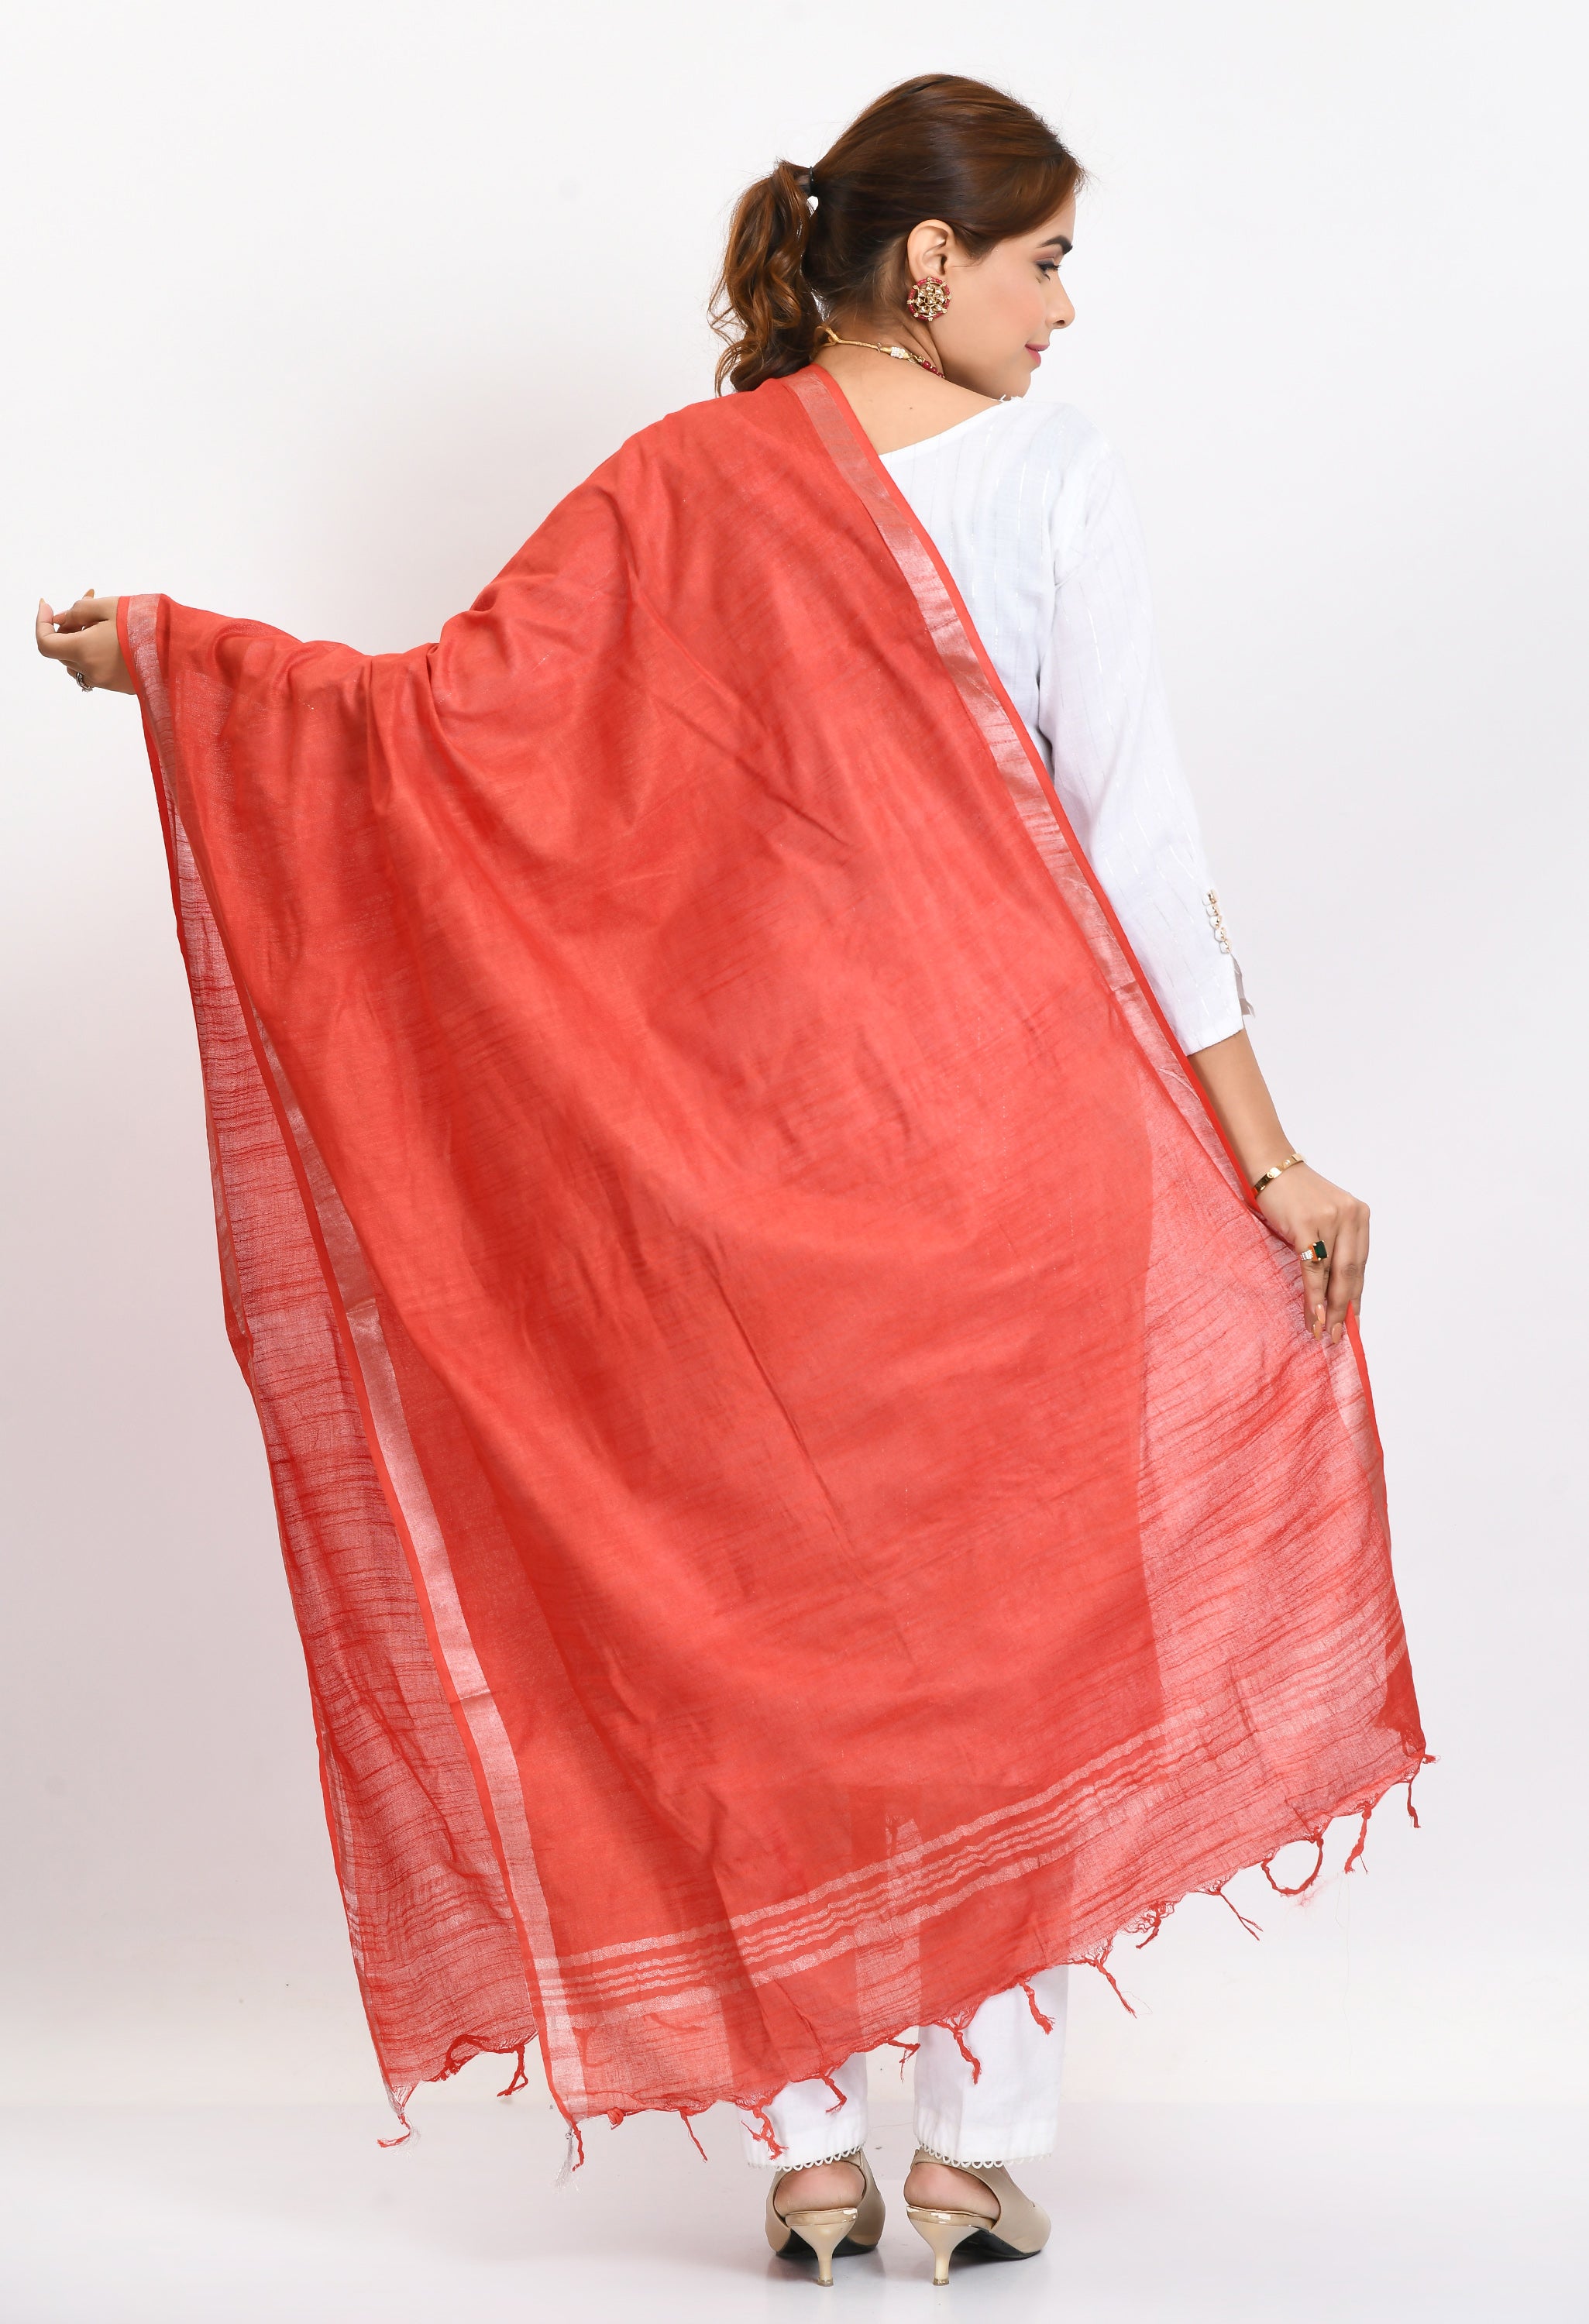 Women's Linen Cotton Silver Border Red Dupatta - Moeza